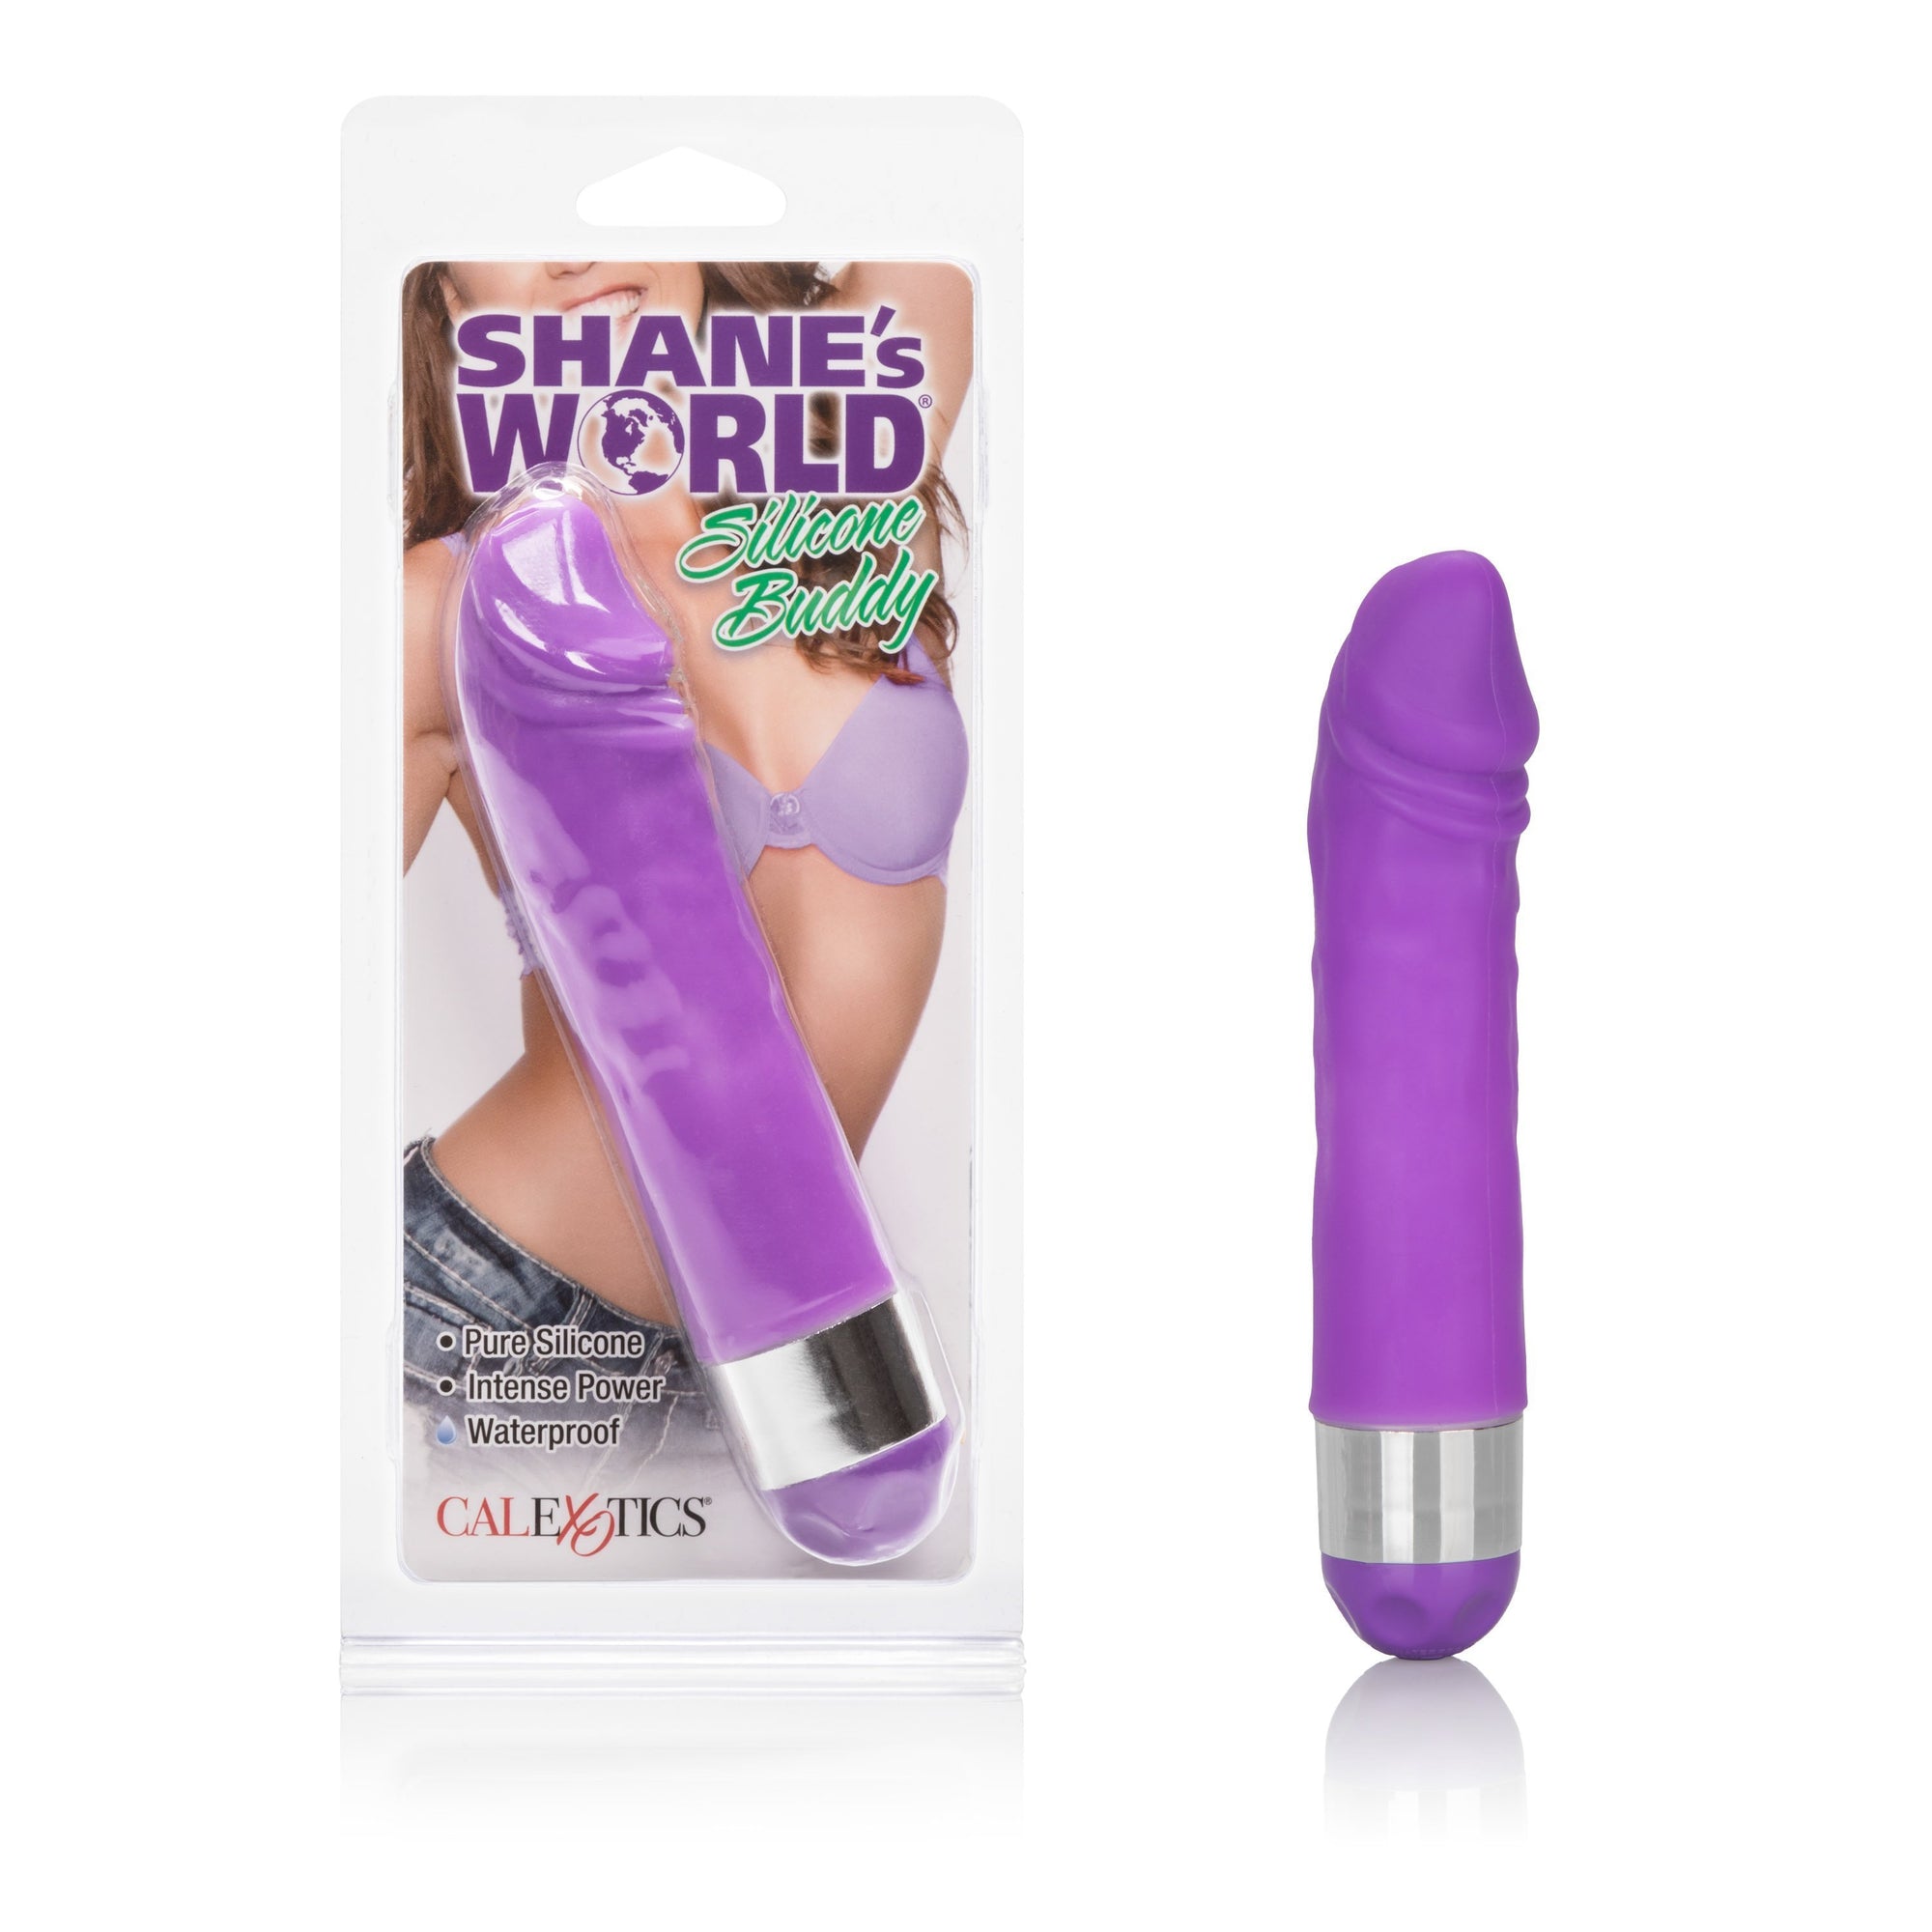 California Exotics - Shane's World Silicone Buddy Vibrator (Purple) Non Realistic Dildo w/o suction cup (Vibration) Non Rechargeable